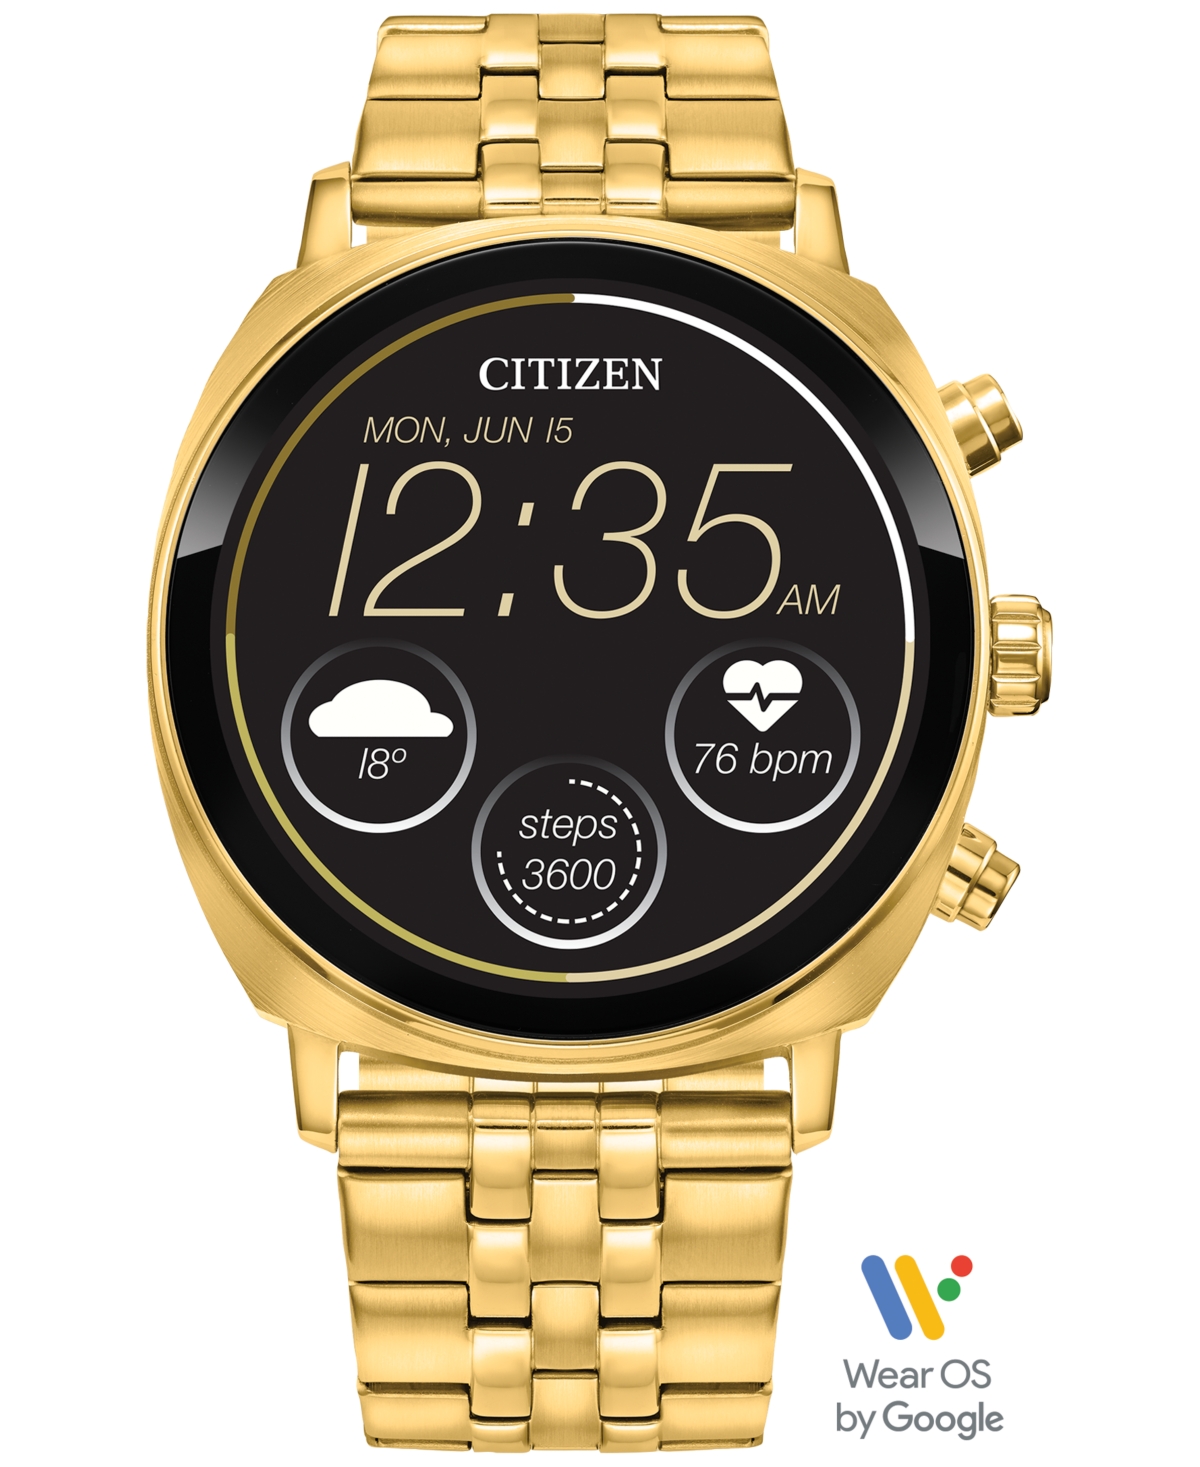 Citizen Unisex Cz Smart Wear Os Gold-tone Stainless Steel Bracelet Smart Watch 41mm